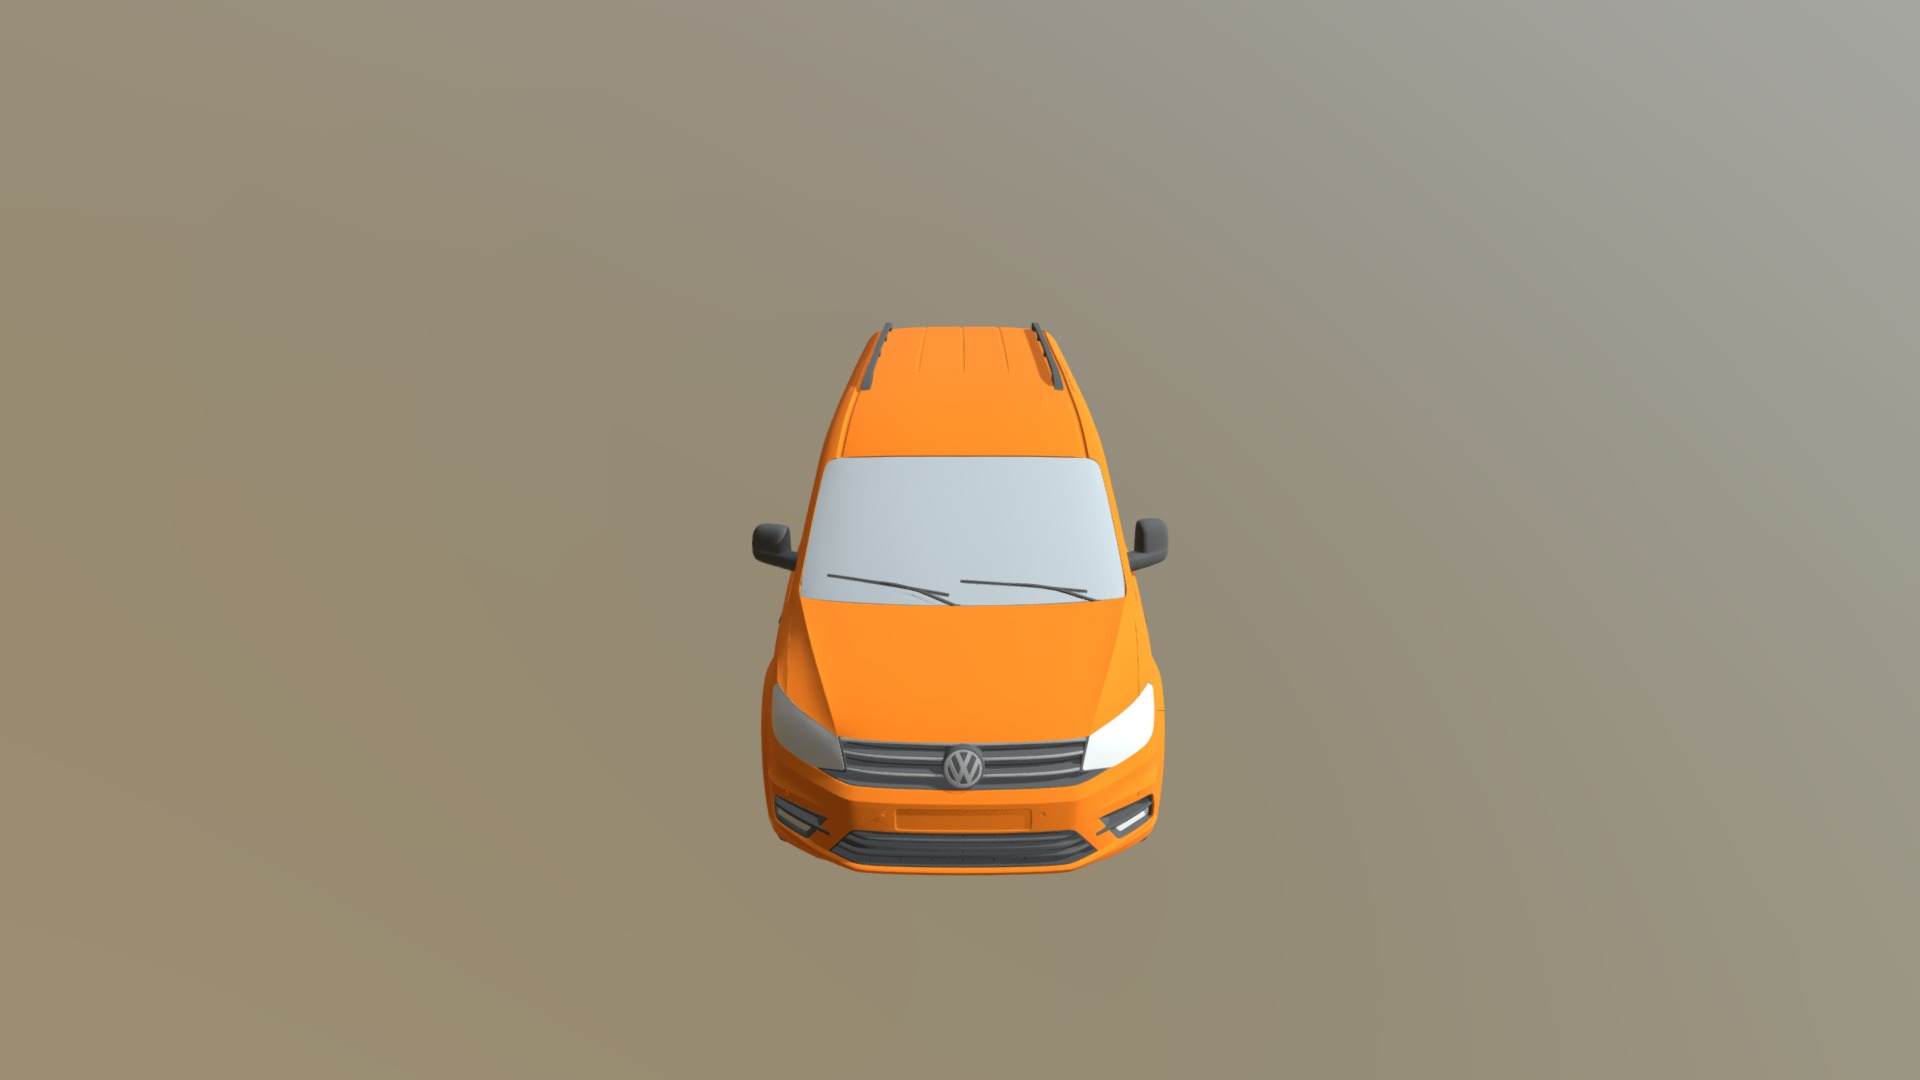 3D model Volkswagen Caddy Maxi Crew Bus 2018 Fbx - This is a 3D model of the Volkswagen Caddy Maxi Crew Bus 2018 Fbx. The 3D model is about an orange car driving on a road.